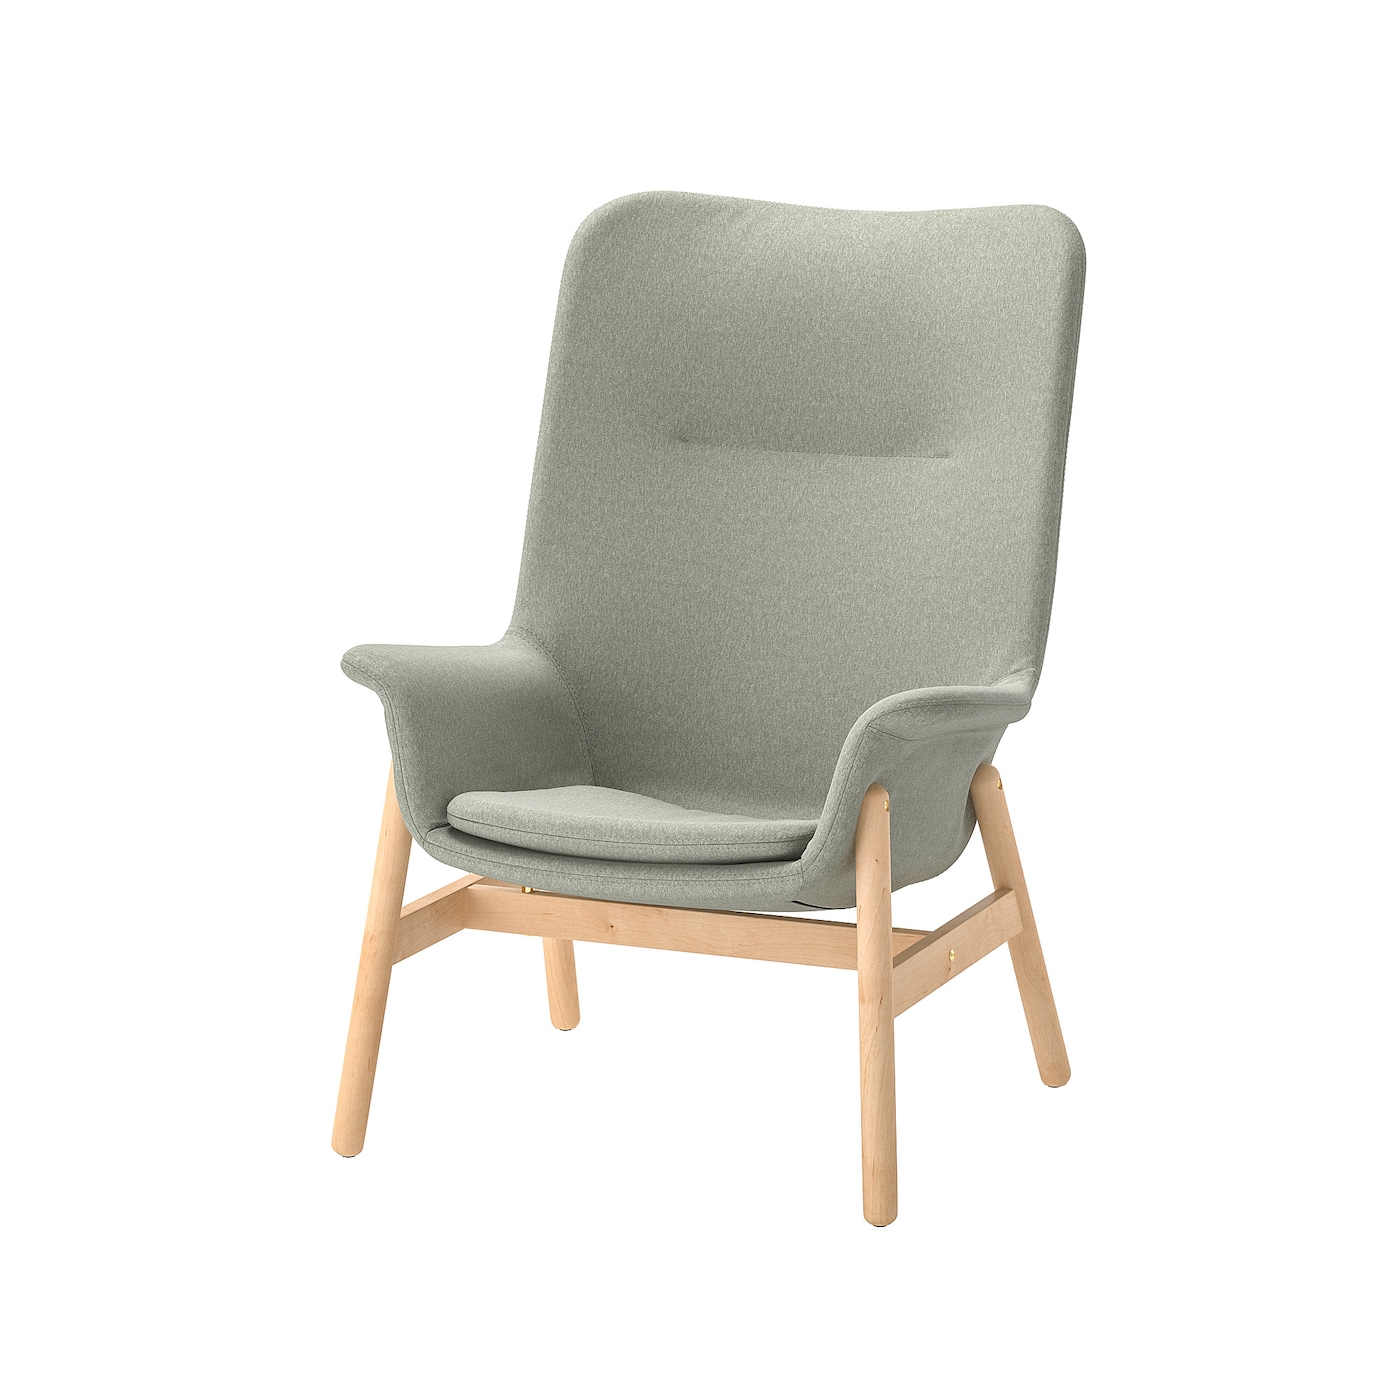 ВЕДБО Кресло с высокой спинкой, Гуннаред светло-зеленый VEDBO IKEA стул кресло boeing коричневый 19040